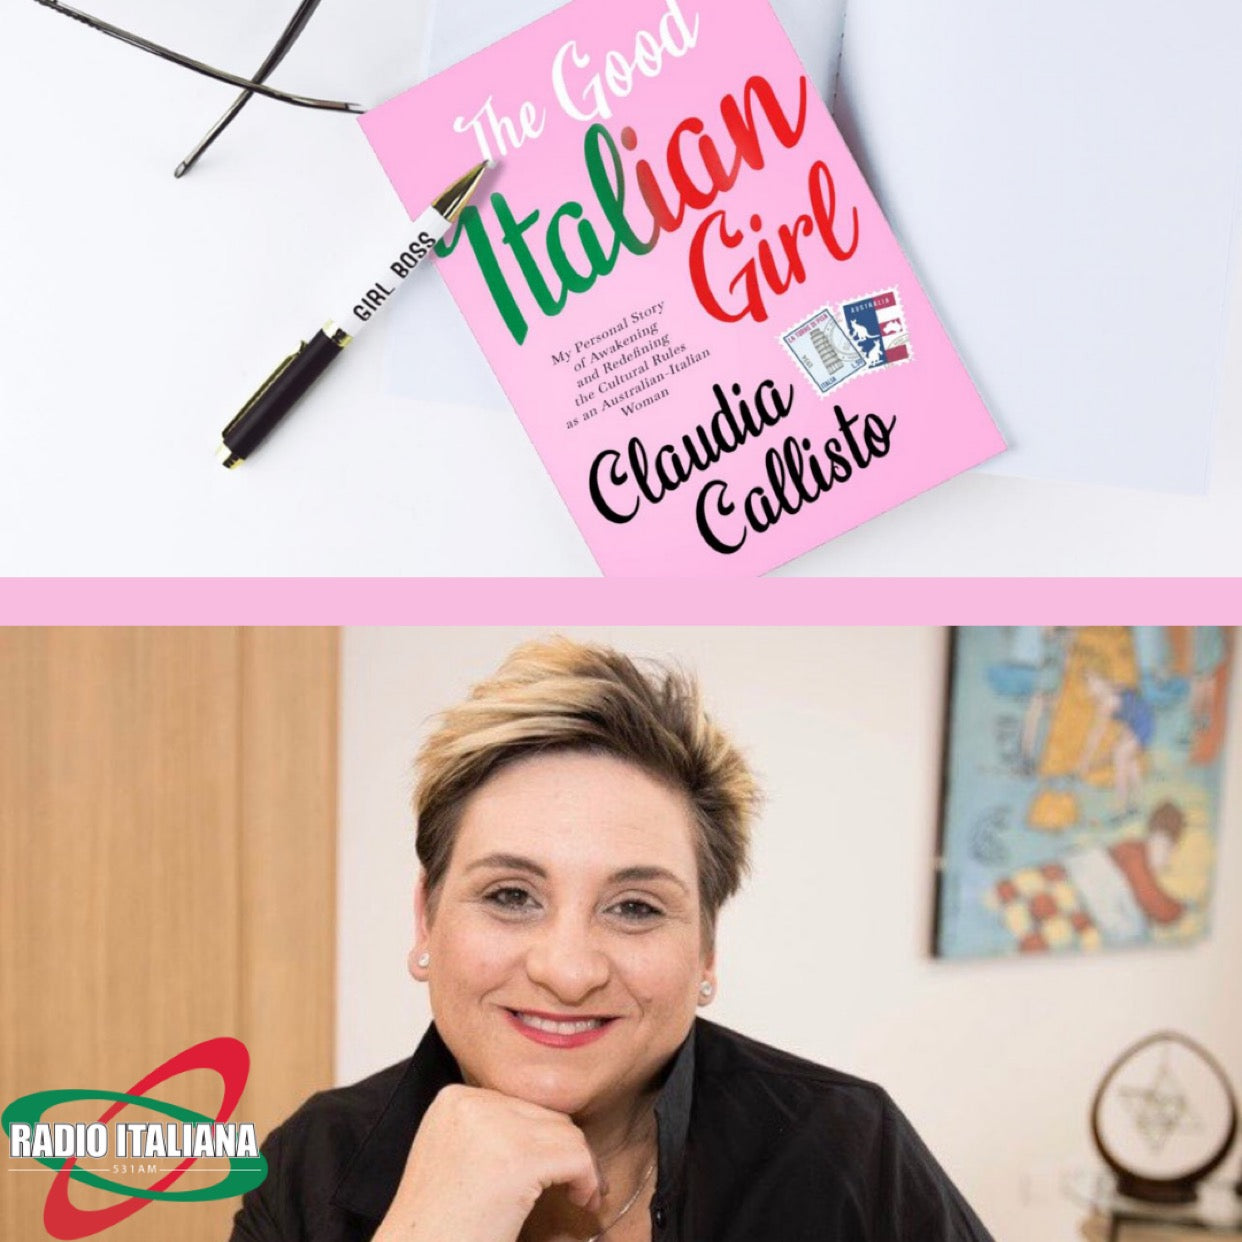 The Good Italian Girl - Featured on Radio Italiana